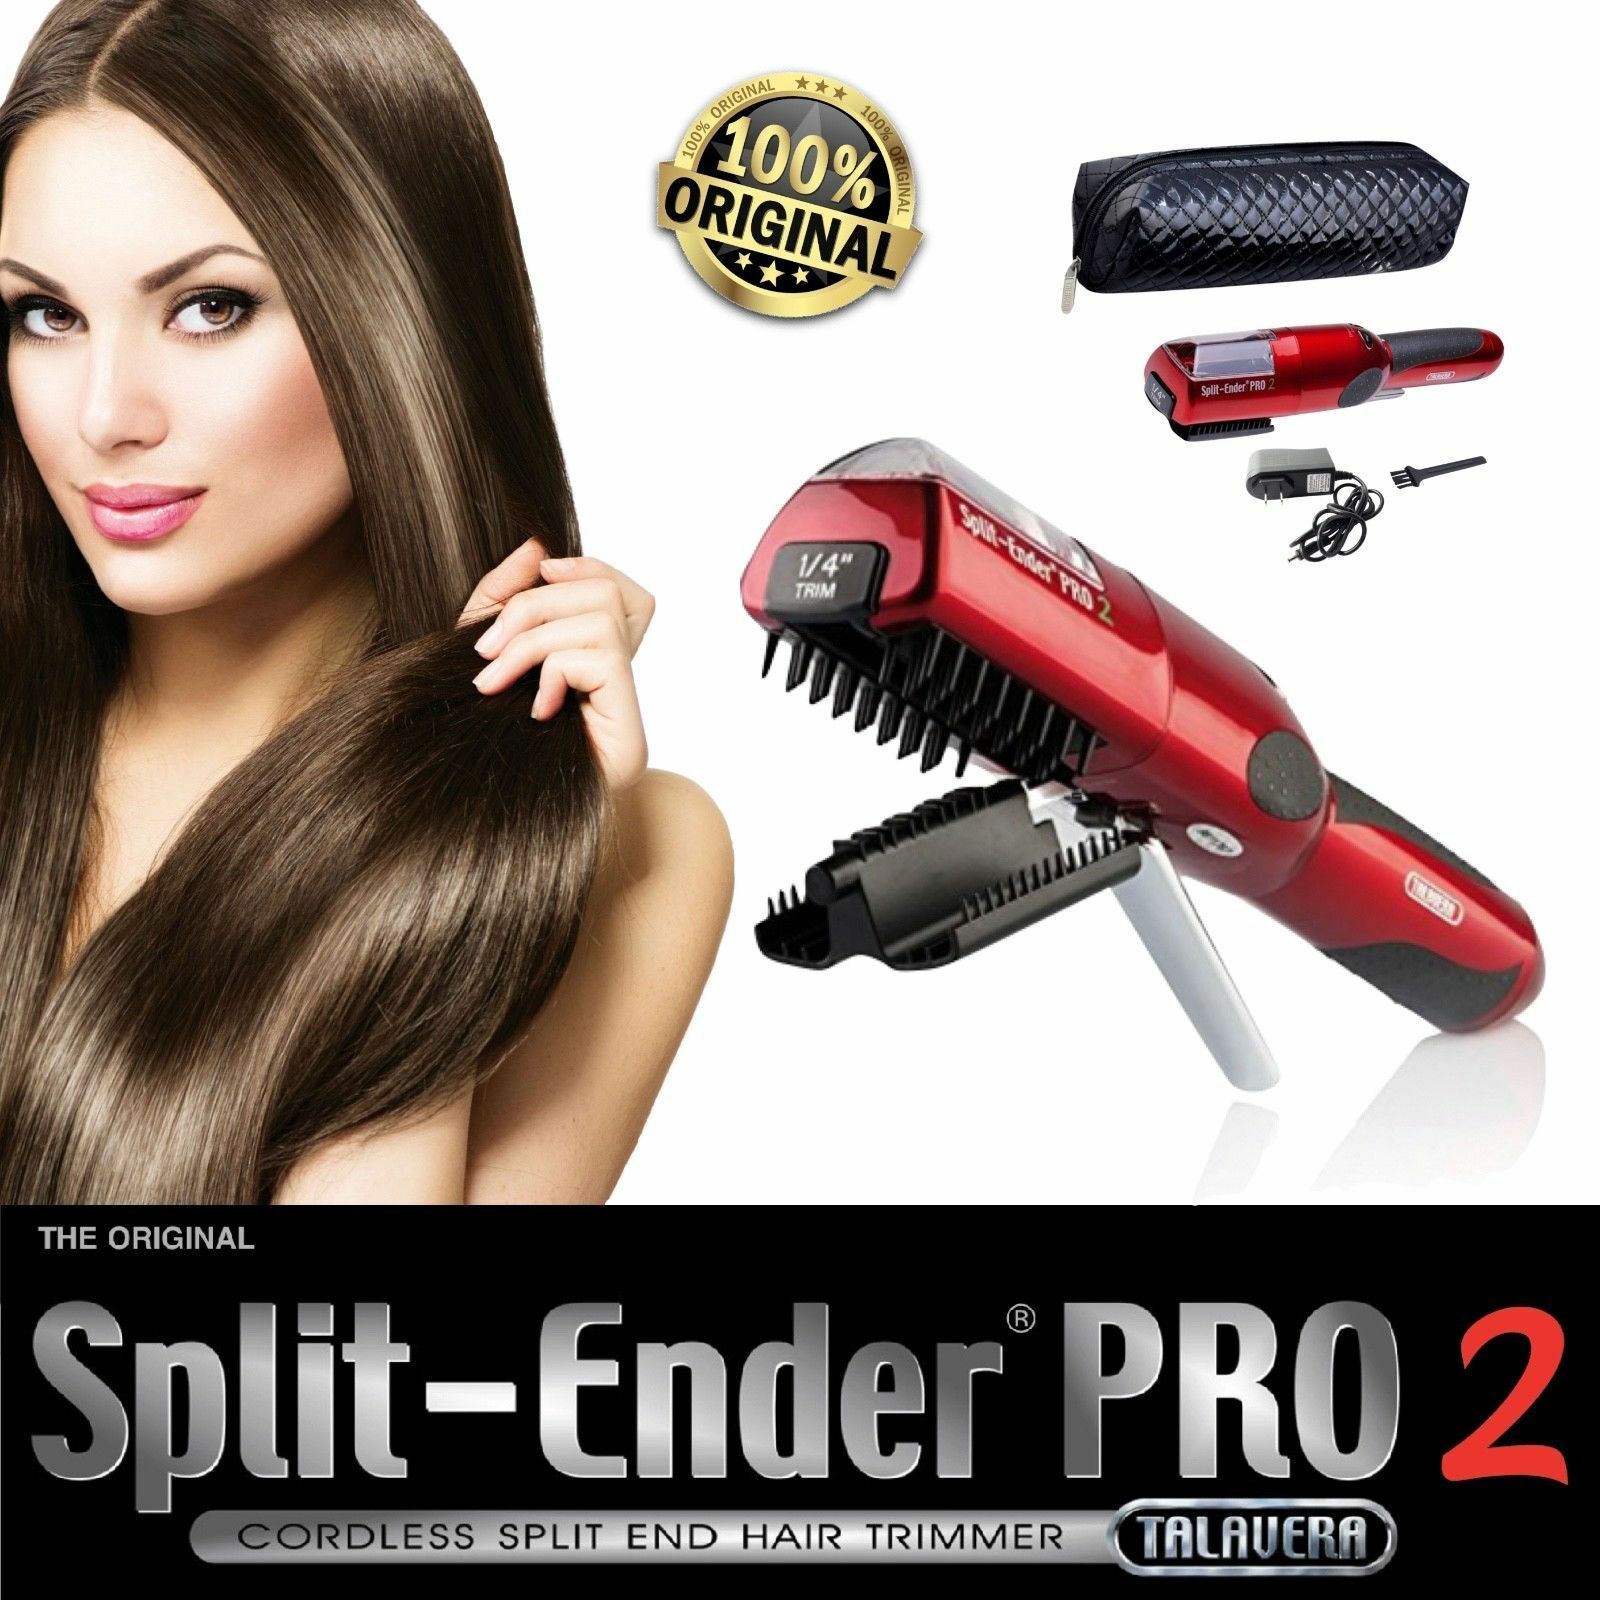 Split Ender PRO2 by Talavera The cordless split end hair